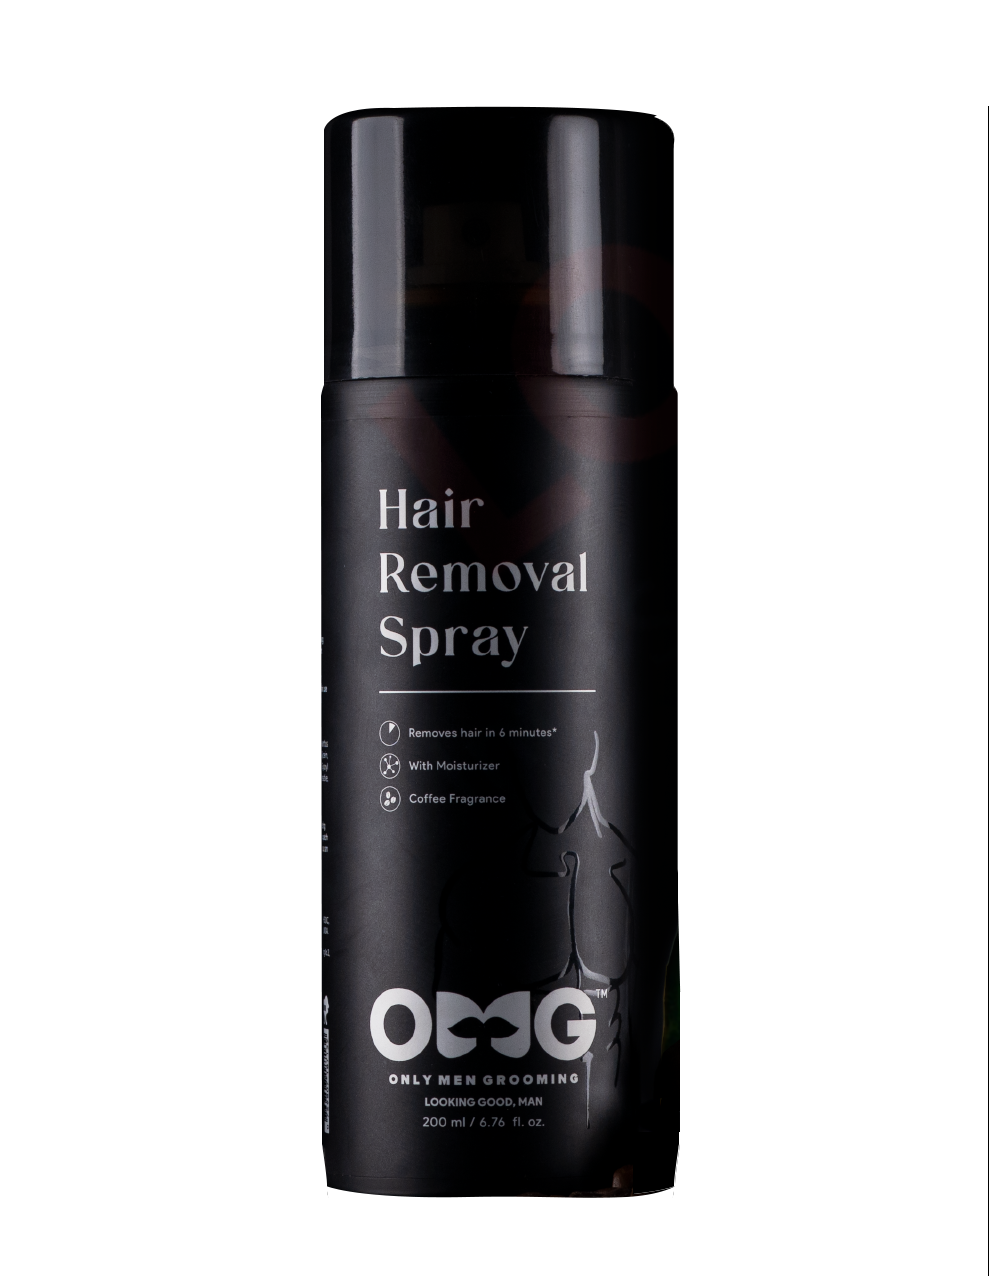 Hair removal spray